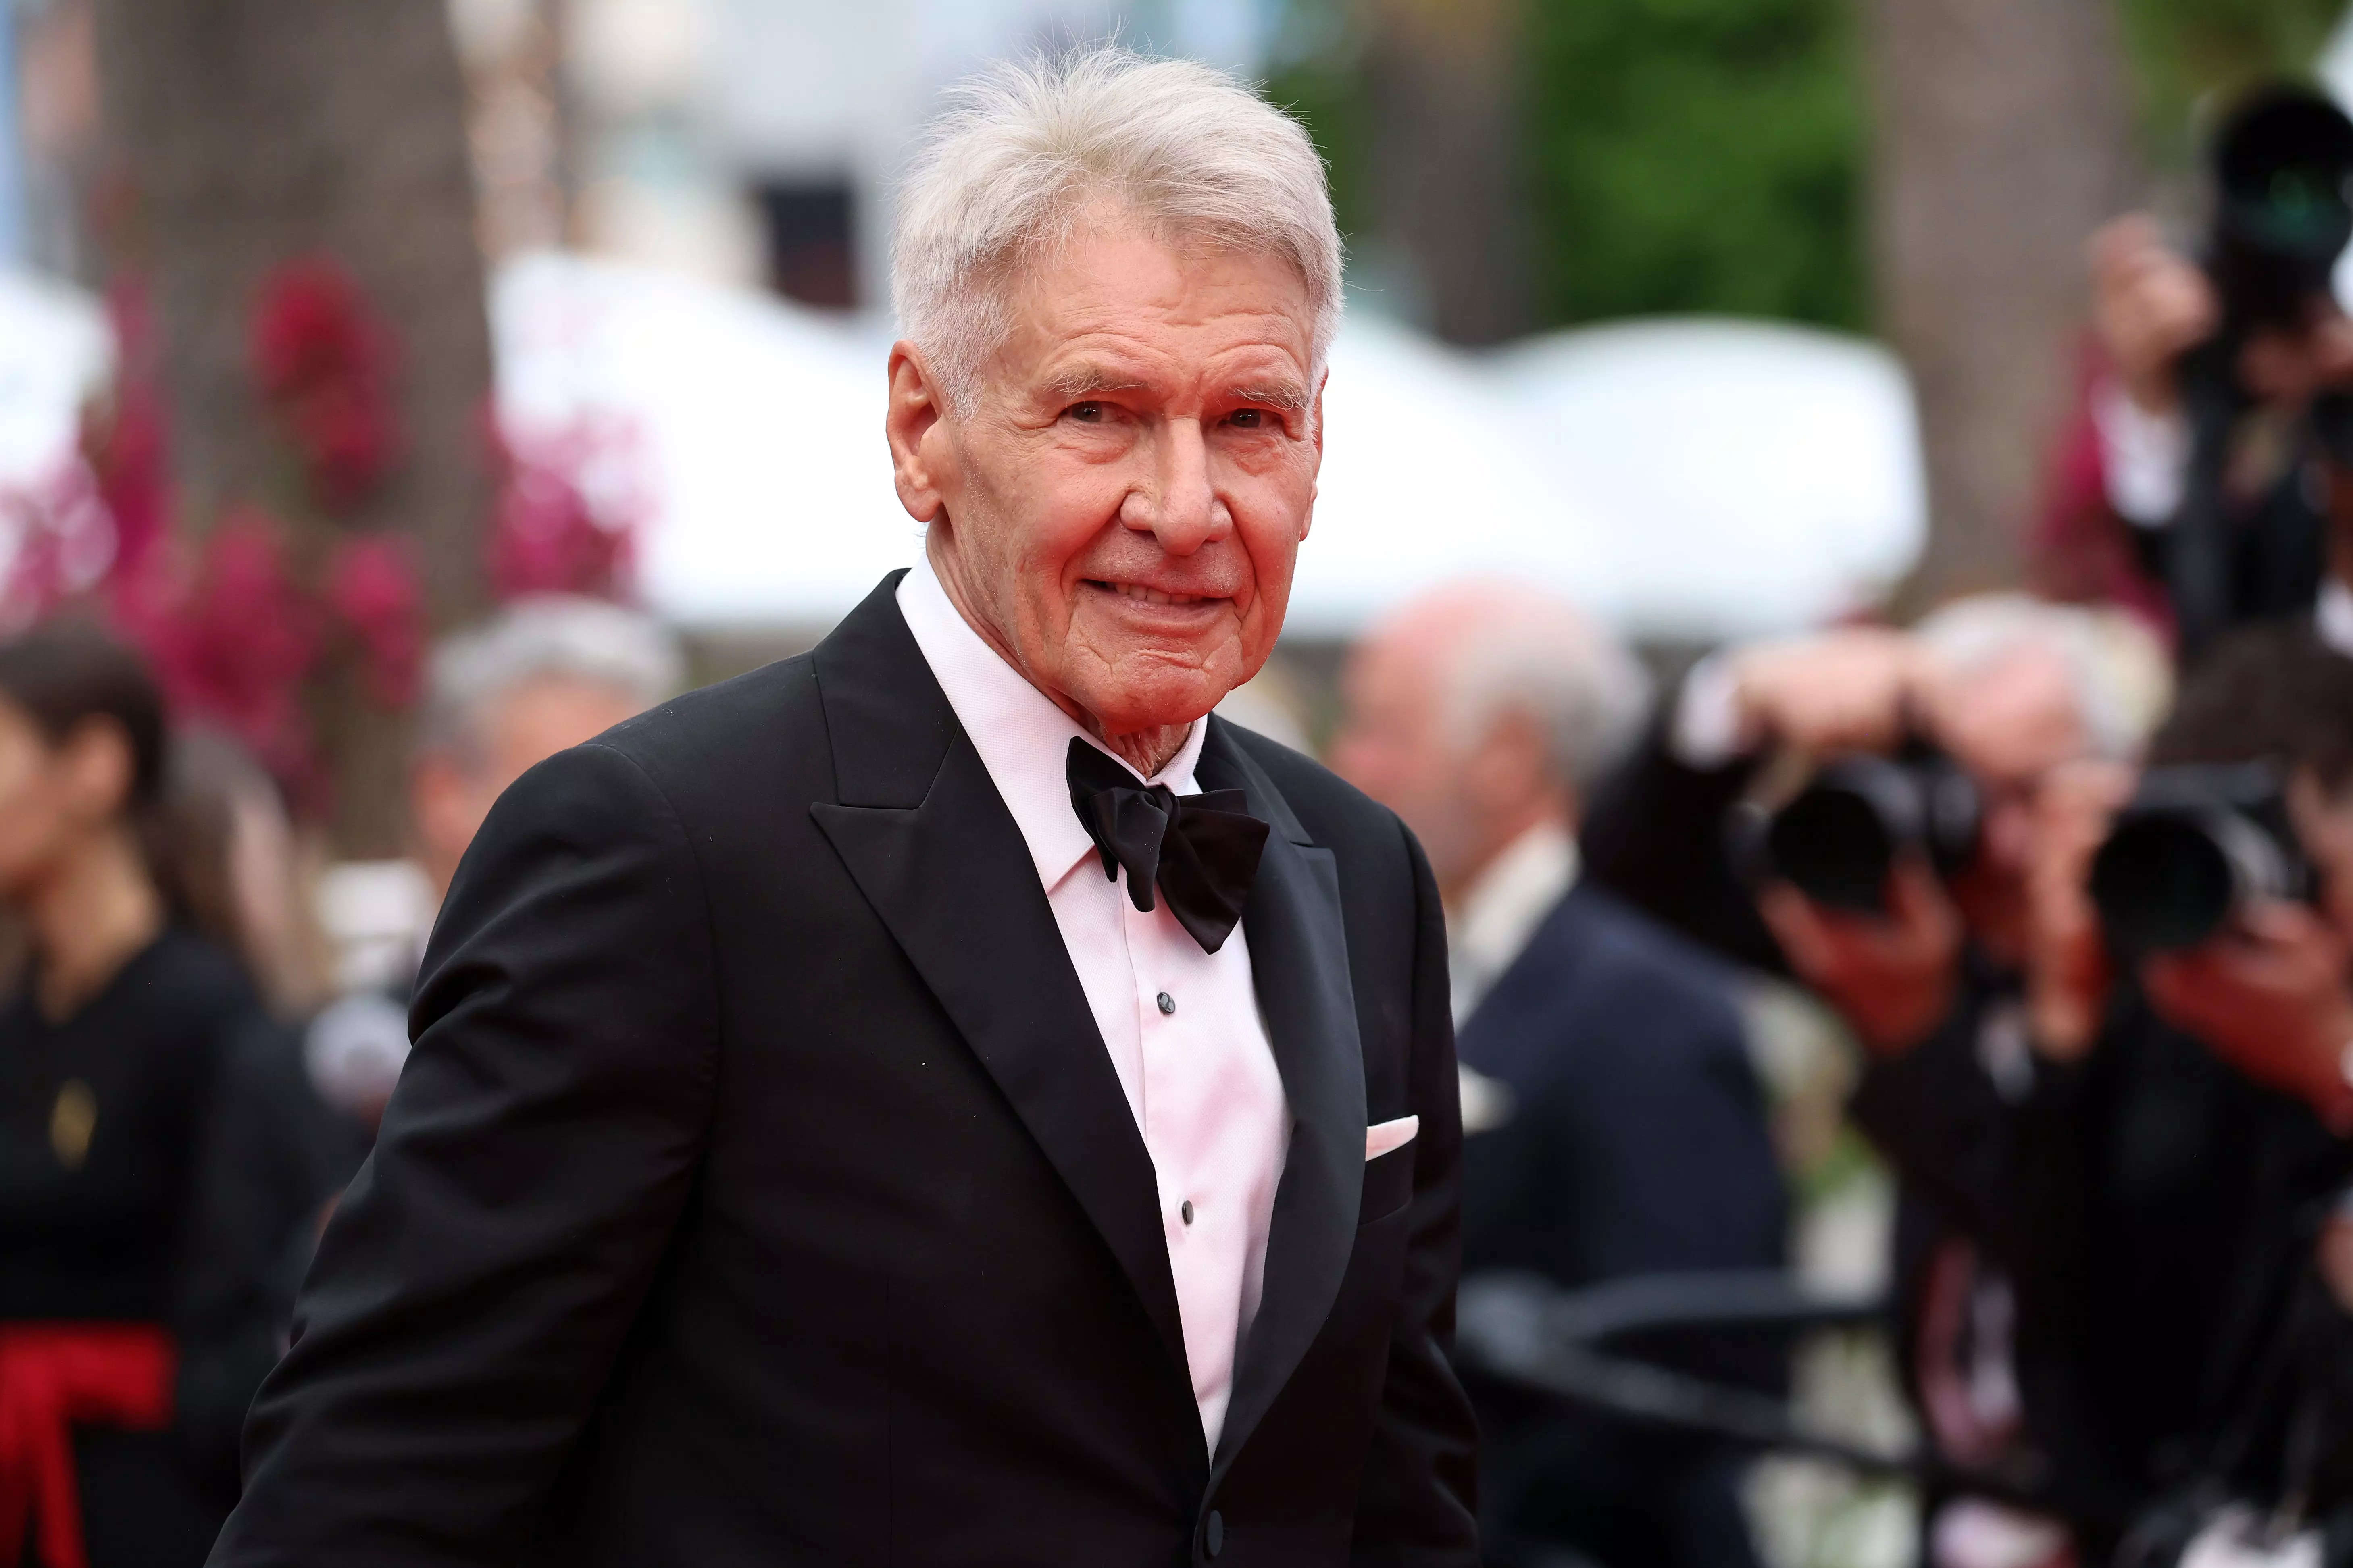 Harrison Ford in a tuxedo